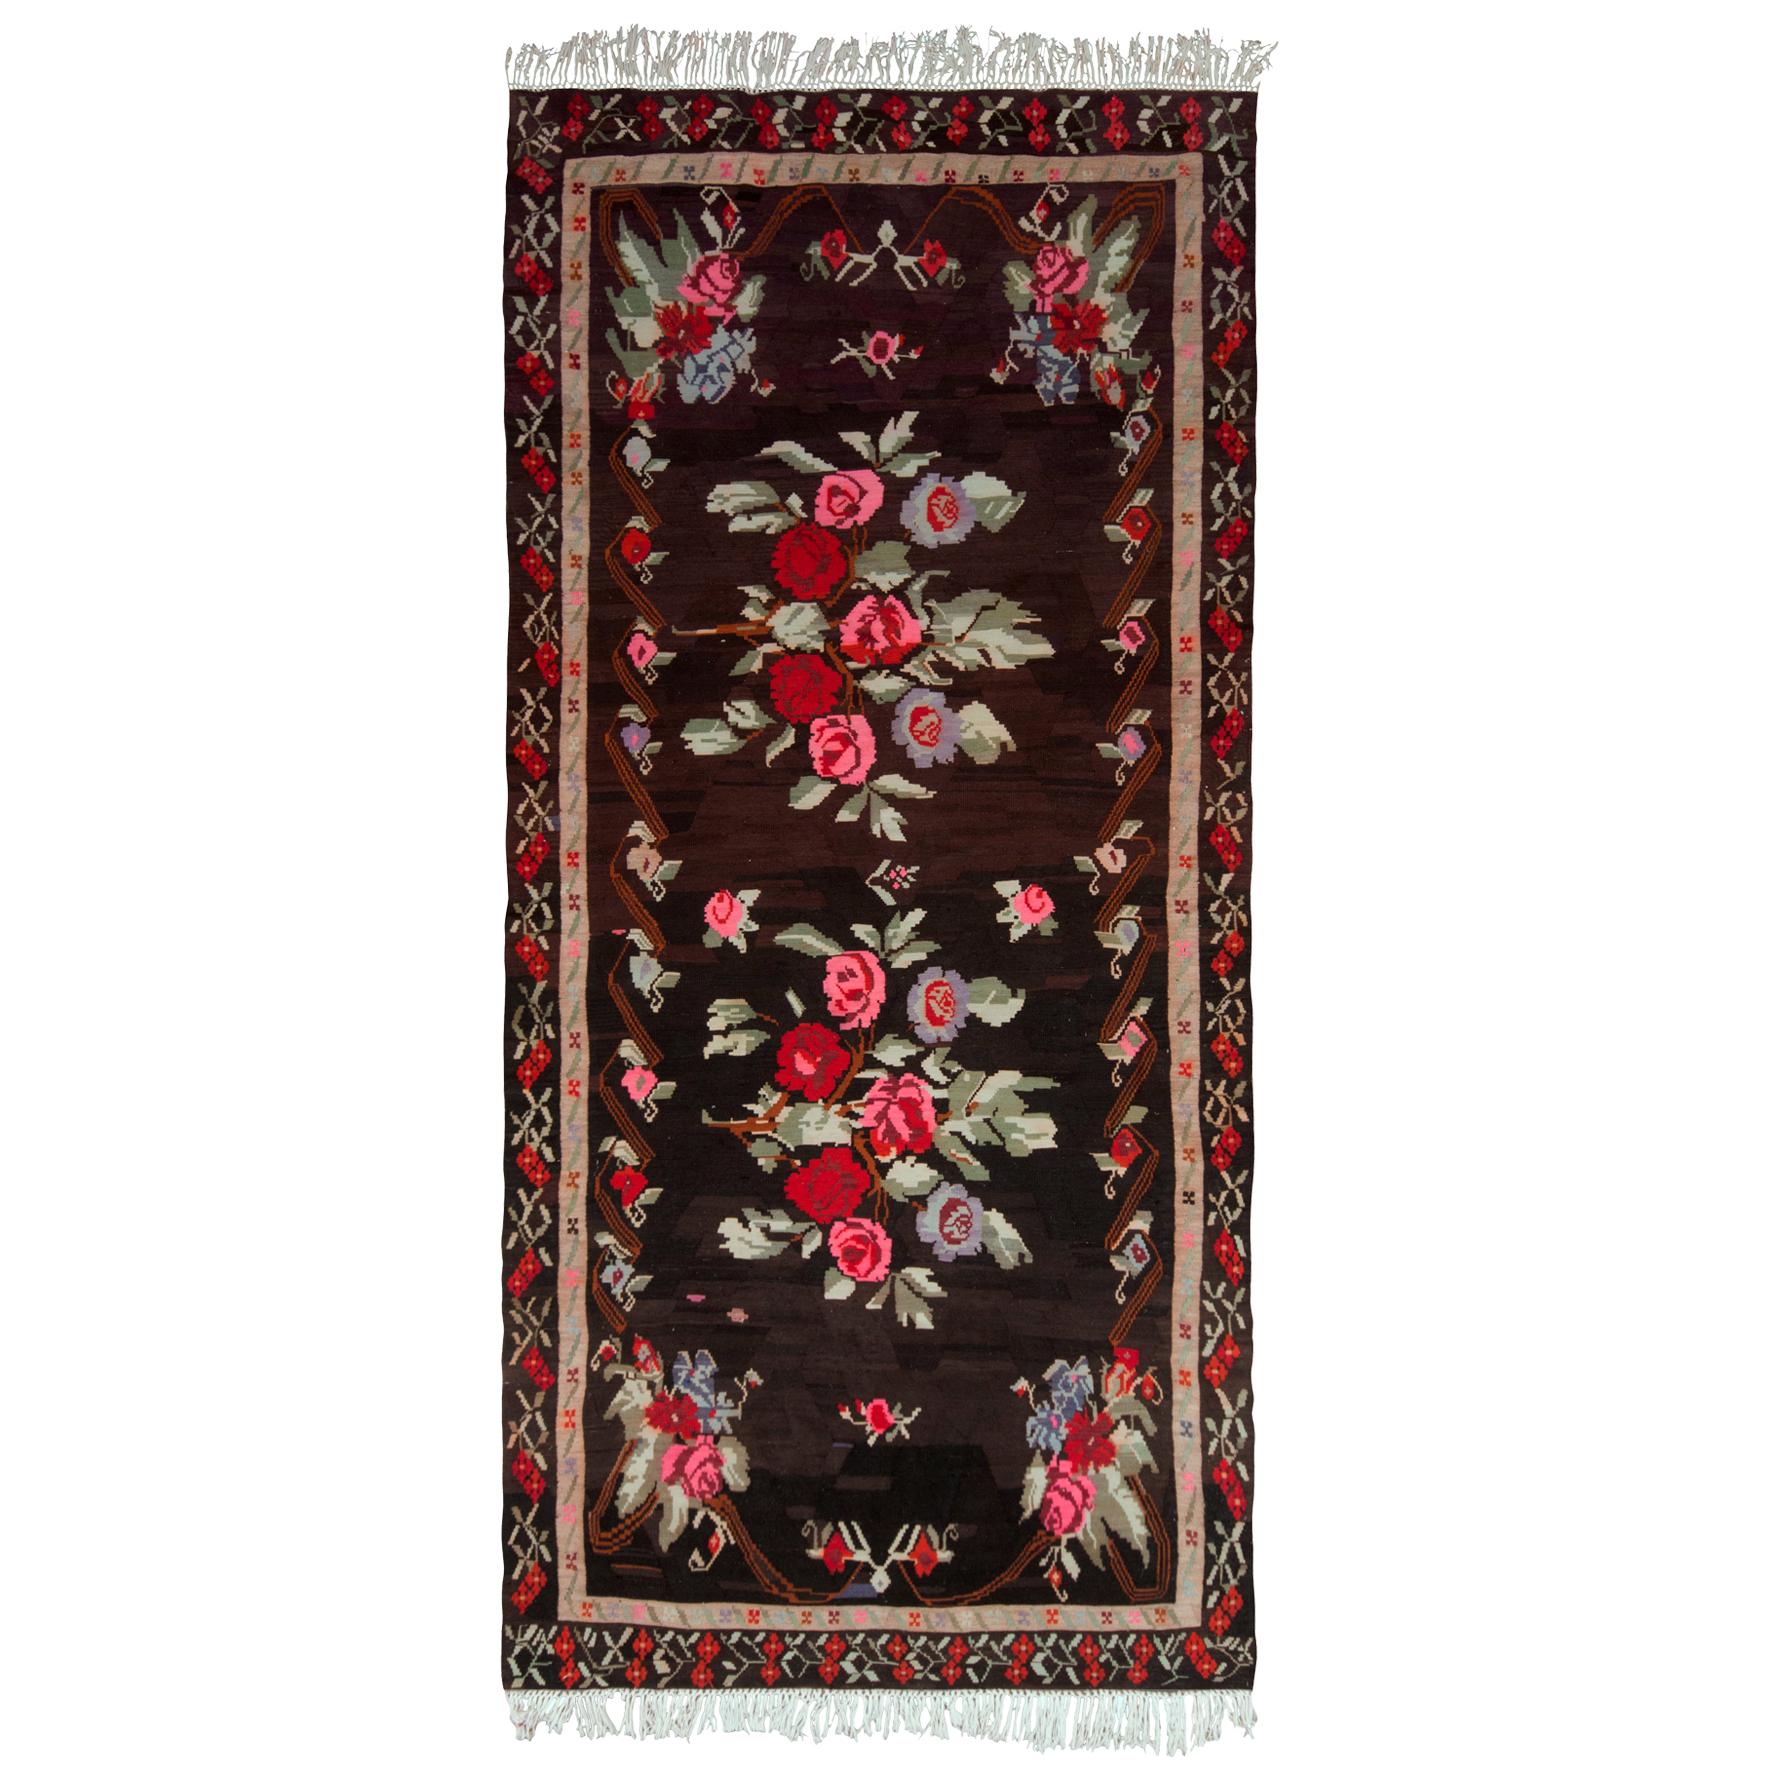 Midcentury Vintage Kilim Rug Black Red Floral Turkish Flat-Weave by Rug & Kilim